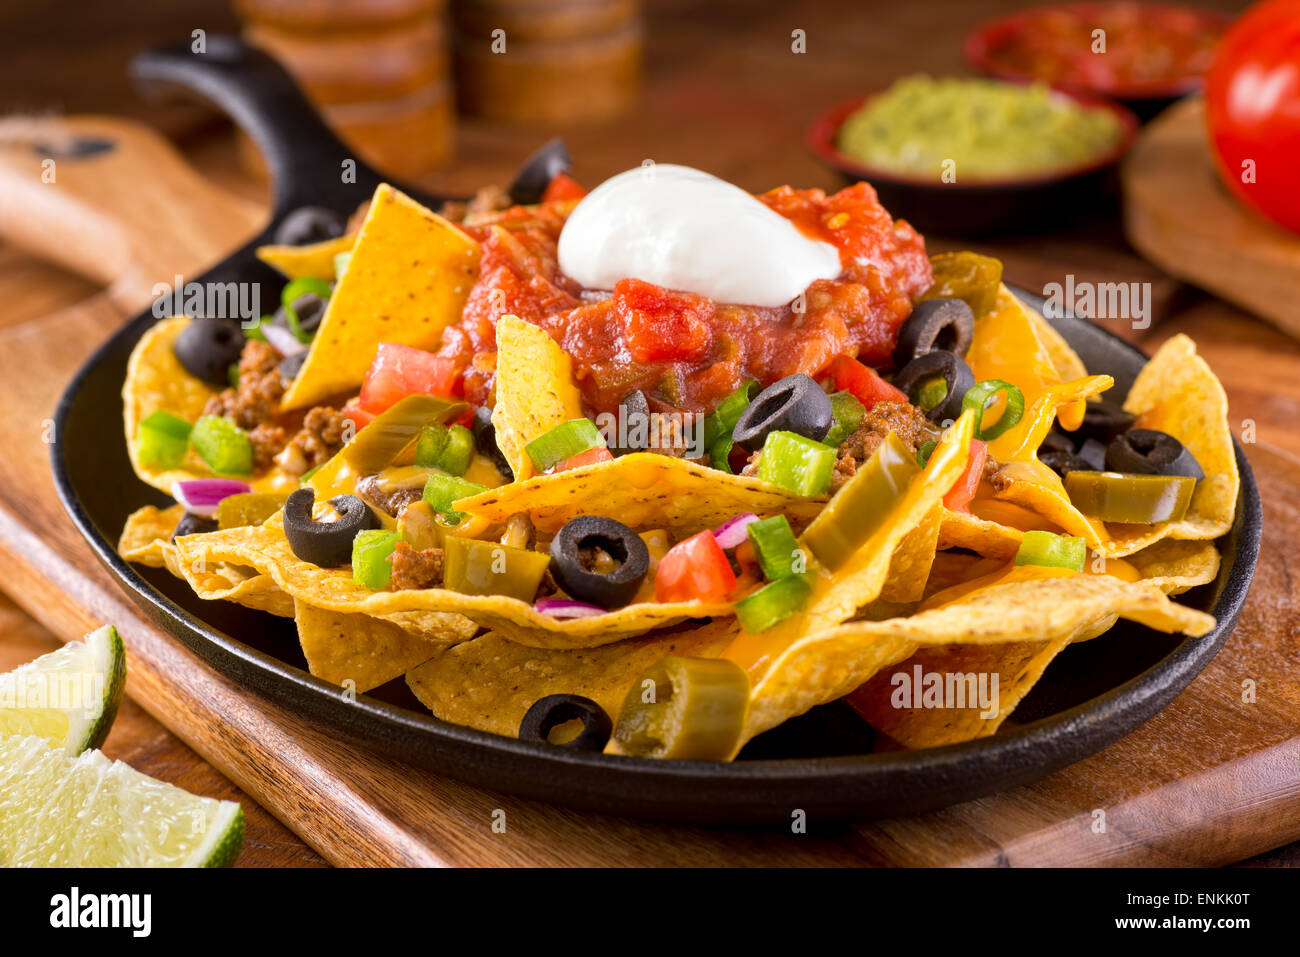 Un plateau de nachos tortillas avec de la sauce au fromage fondu, le boeuf haché, piments jalapenos, oignon rouge, oignon vert, tomate, b Banque D'Images